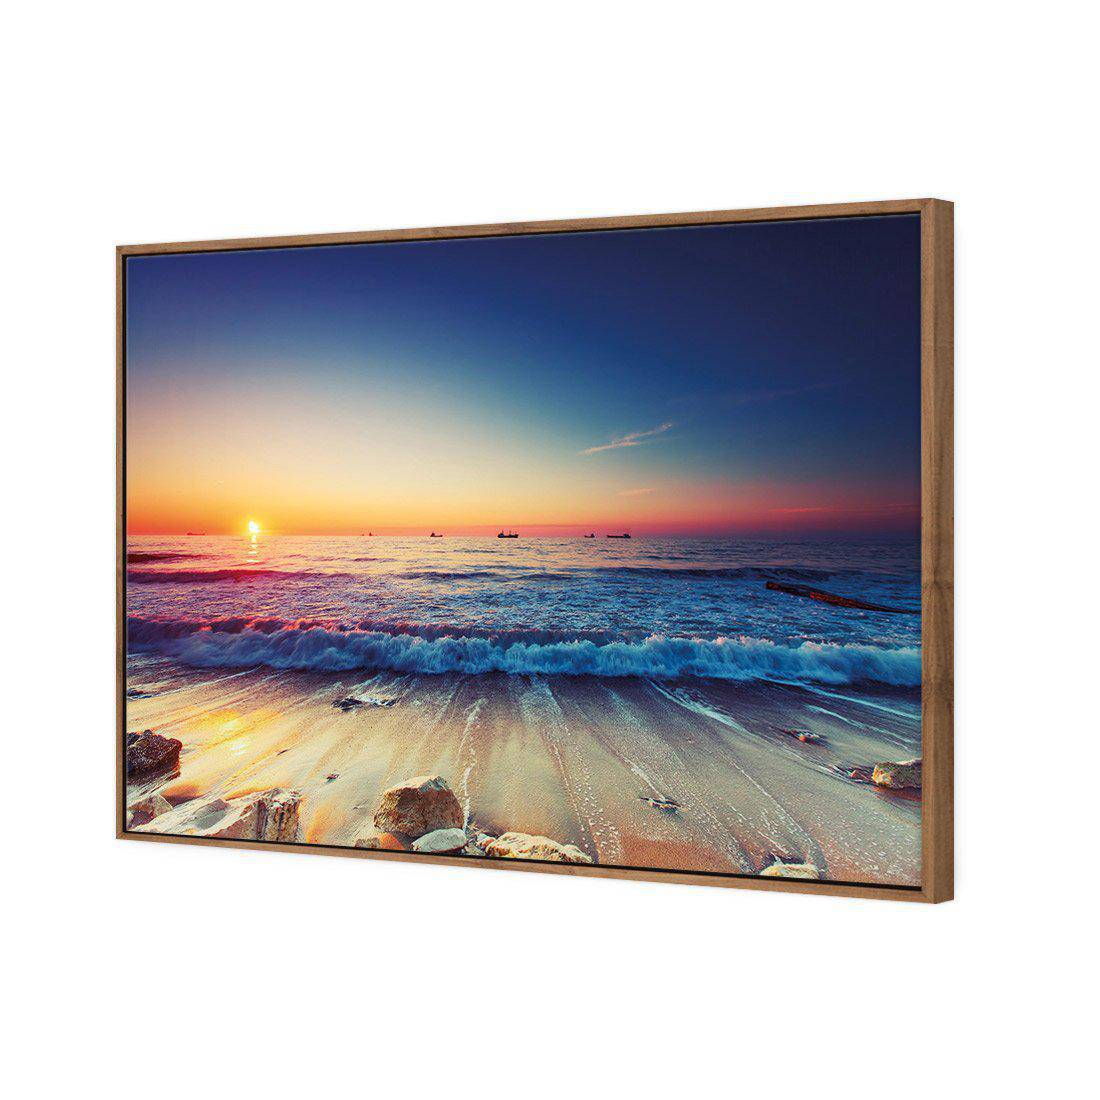 High Tide Sunset Canvas Art-Canvas-Wall Art Designs-45x30cm-Canvas - Natural Frame-Wall Art Designs